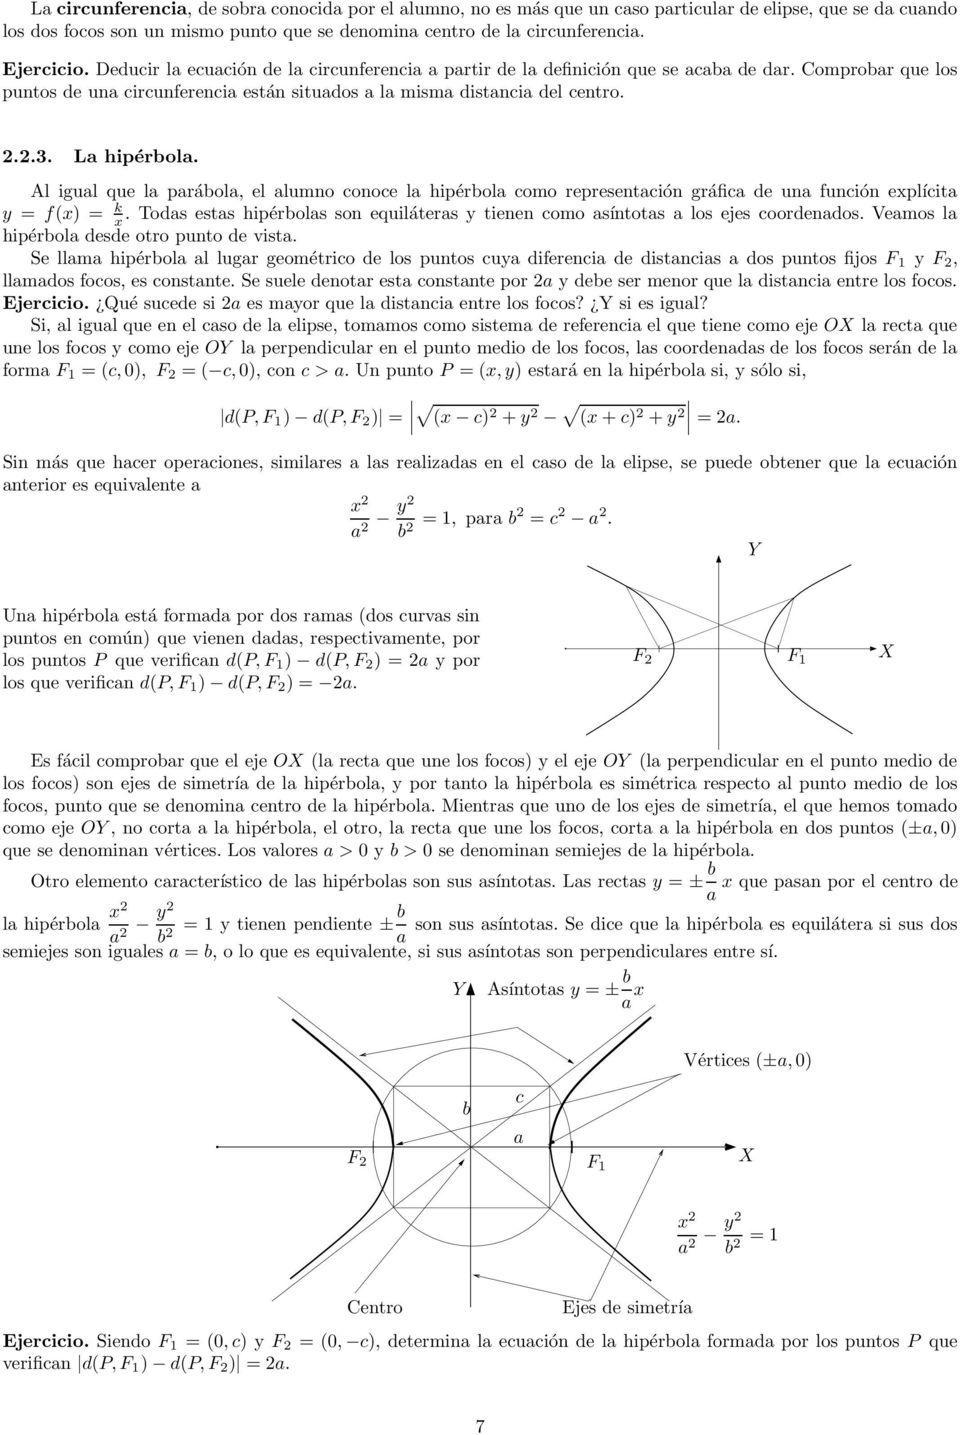 La hipérbola. Al igual que la parábola, el alumno conoce la hipérbola como representación gráfica de una función explícita y = f(x) = k x.